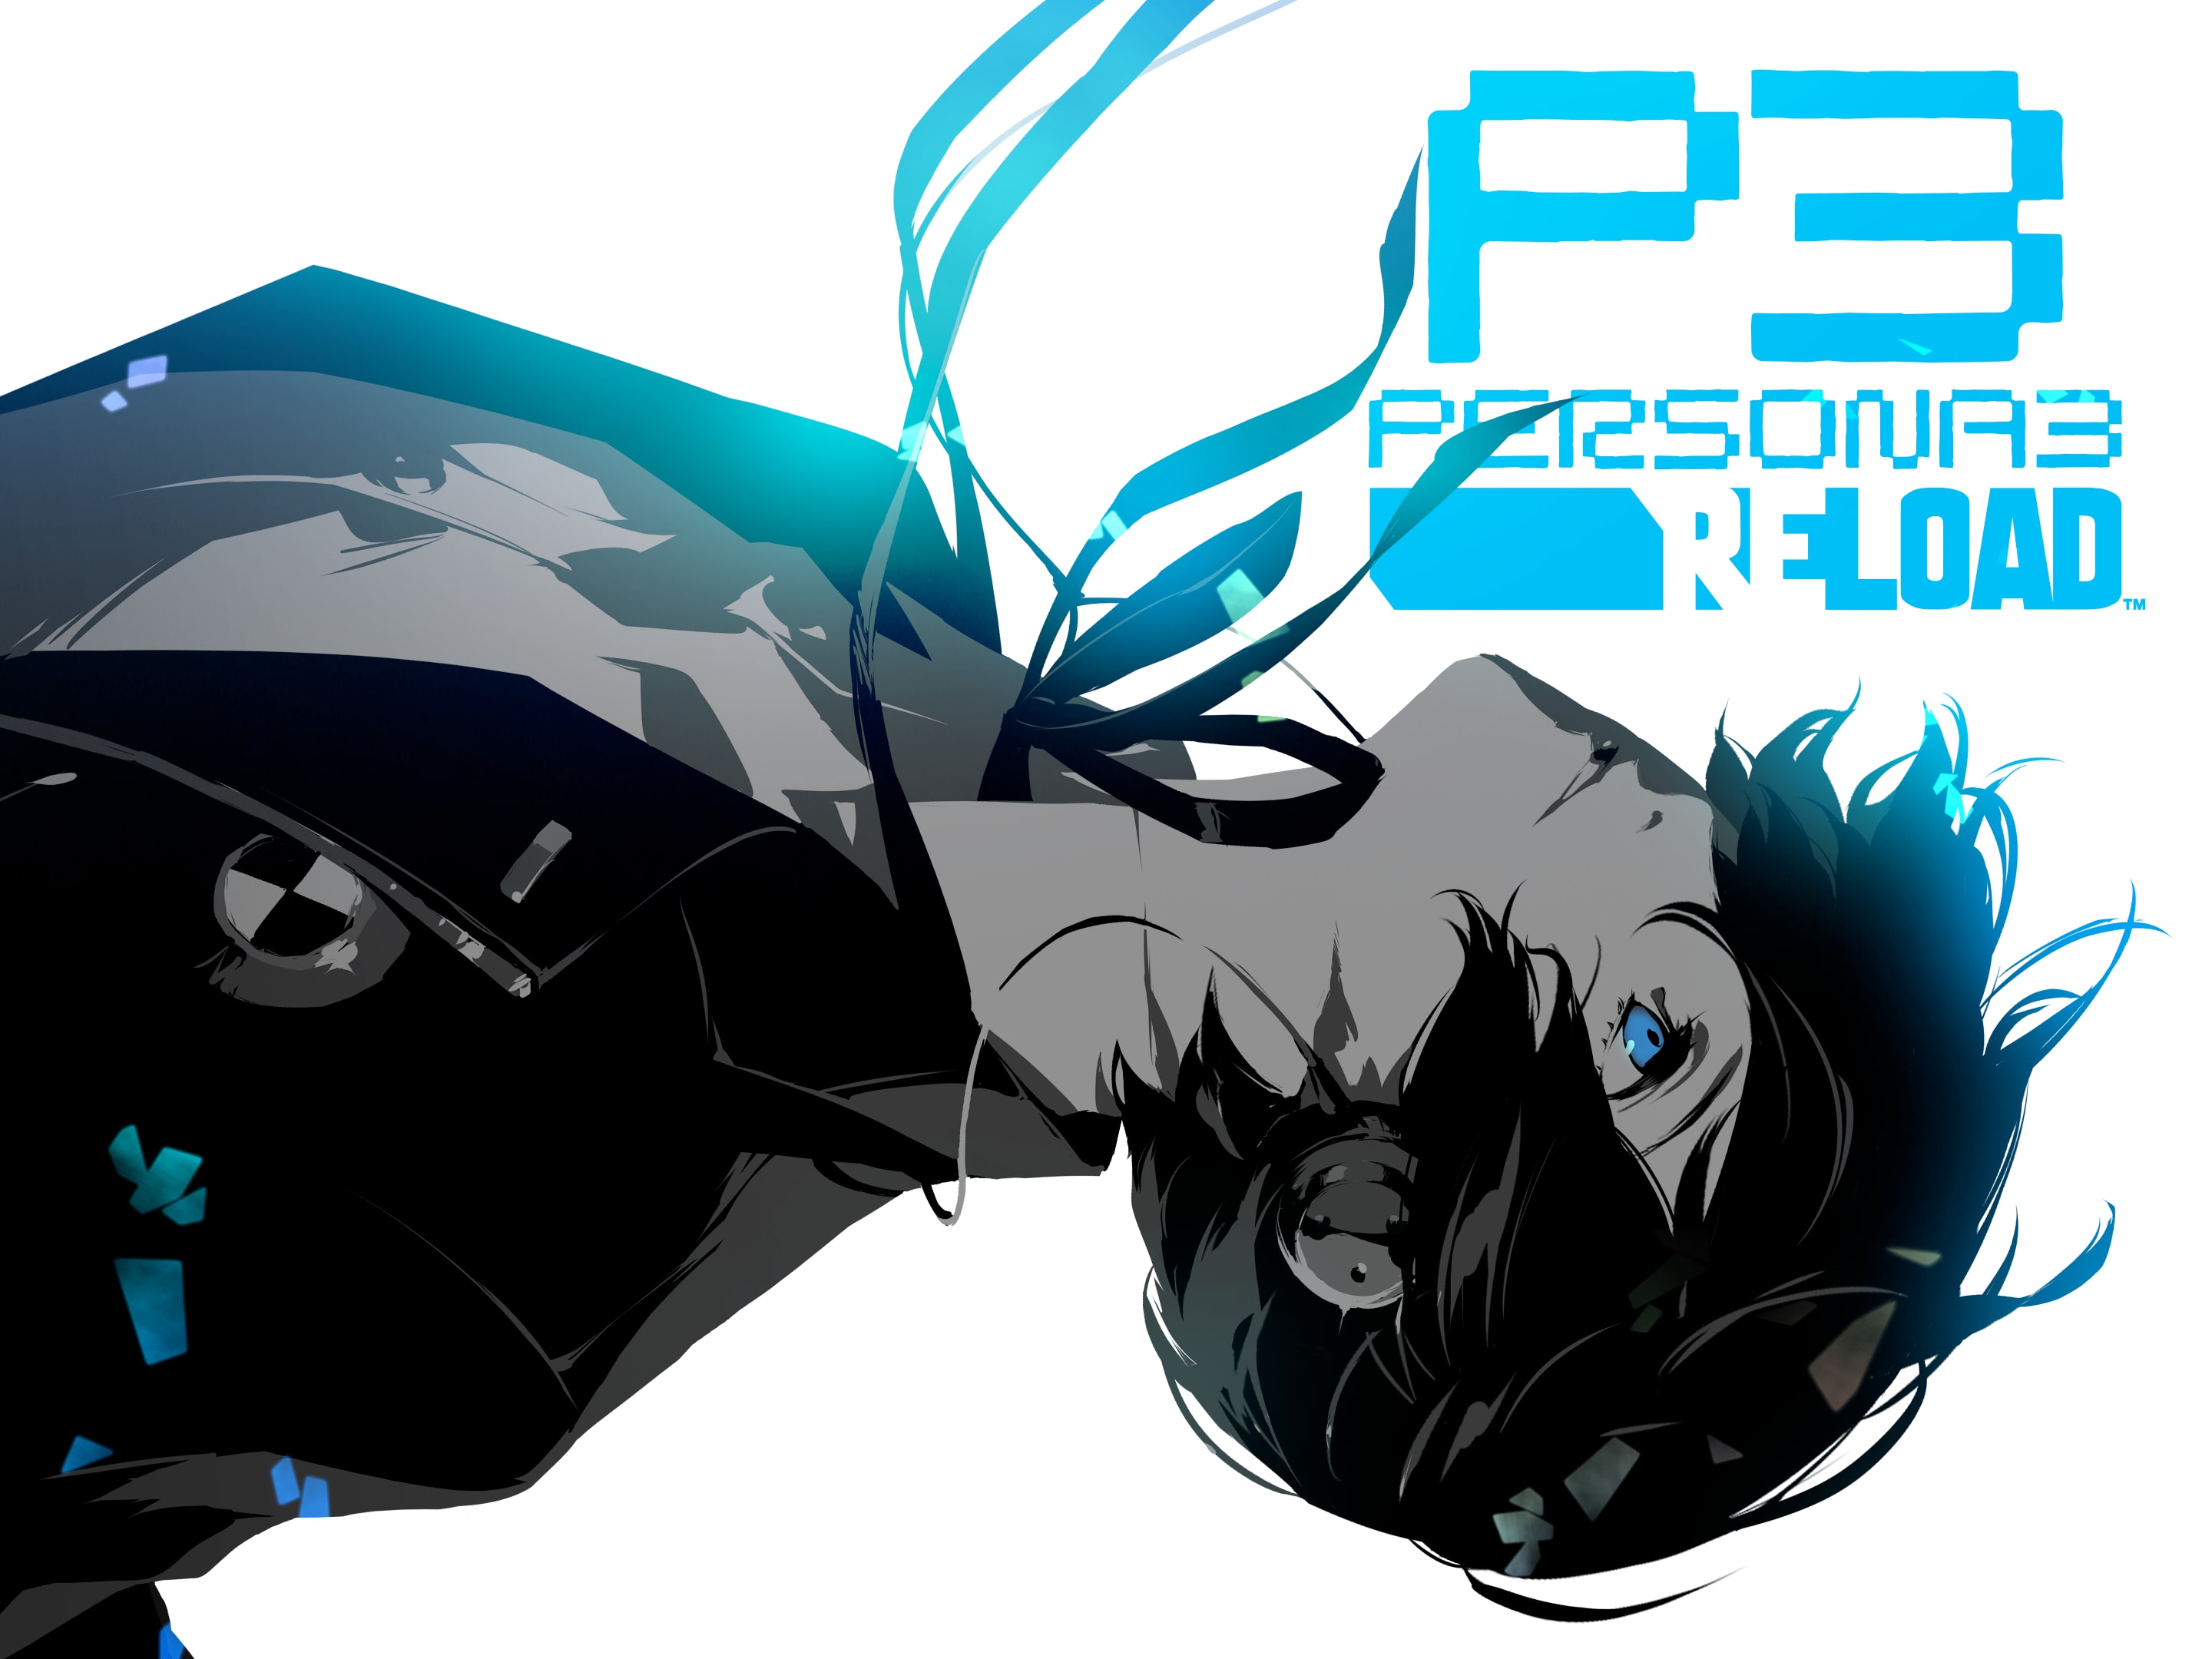 ペルソナ3 リロード - PS4 - ゲームソフト